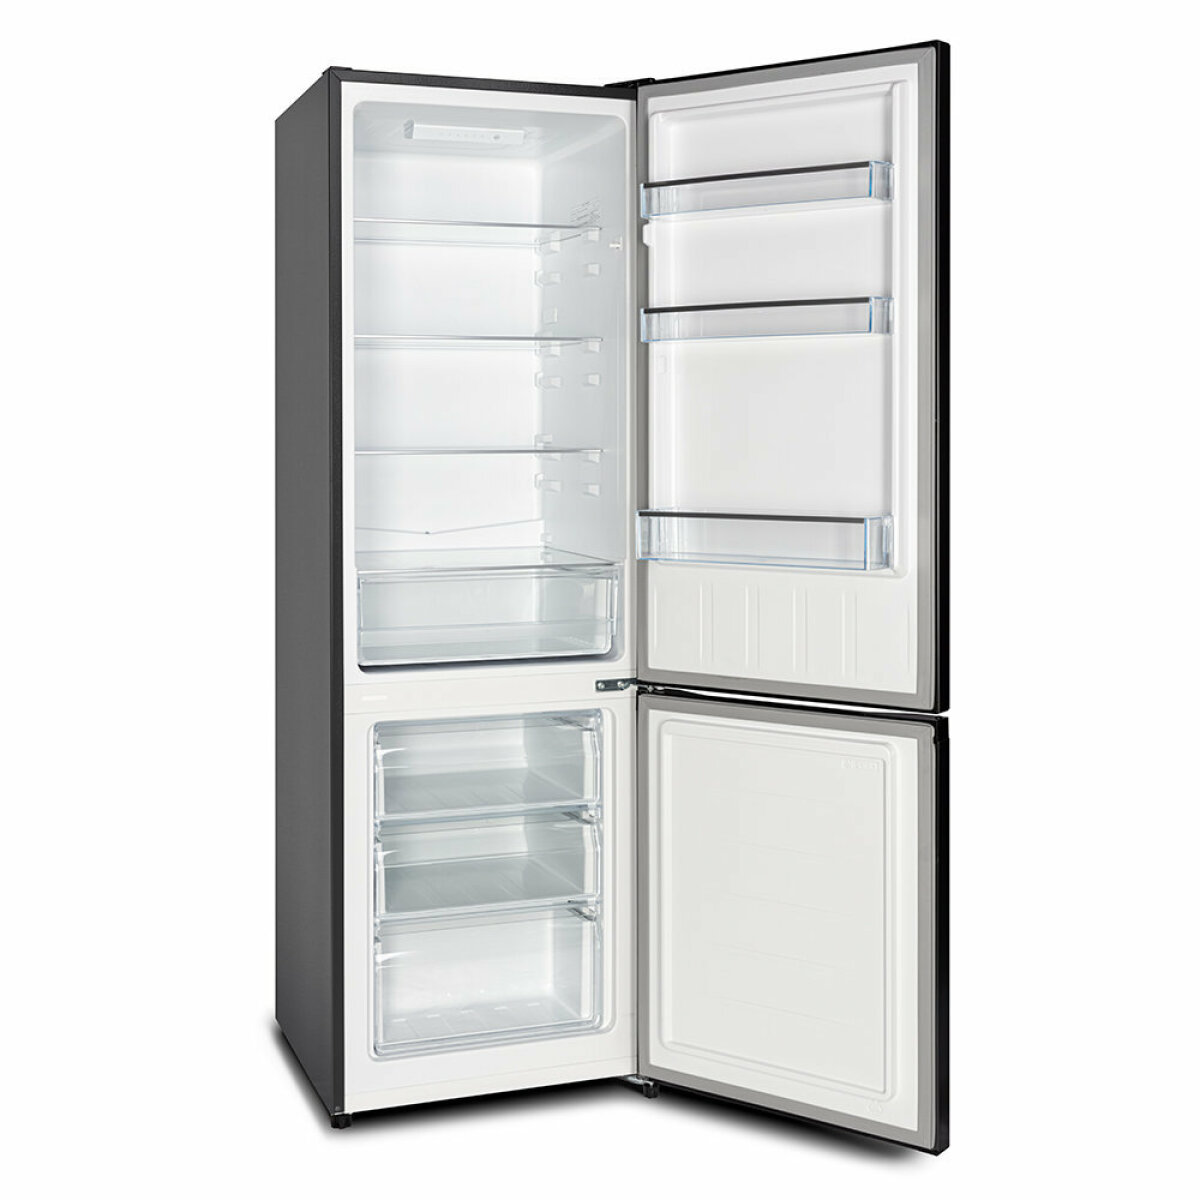 Chiq - CHiQ réfrigérateur congélateur bas, 260L (187+73), low frost -  Réfrigérateur - Rue du Commerce